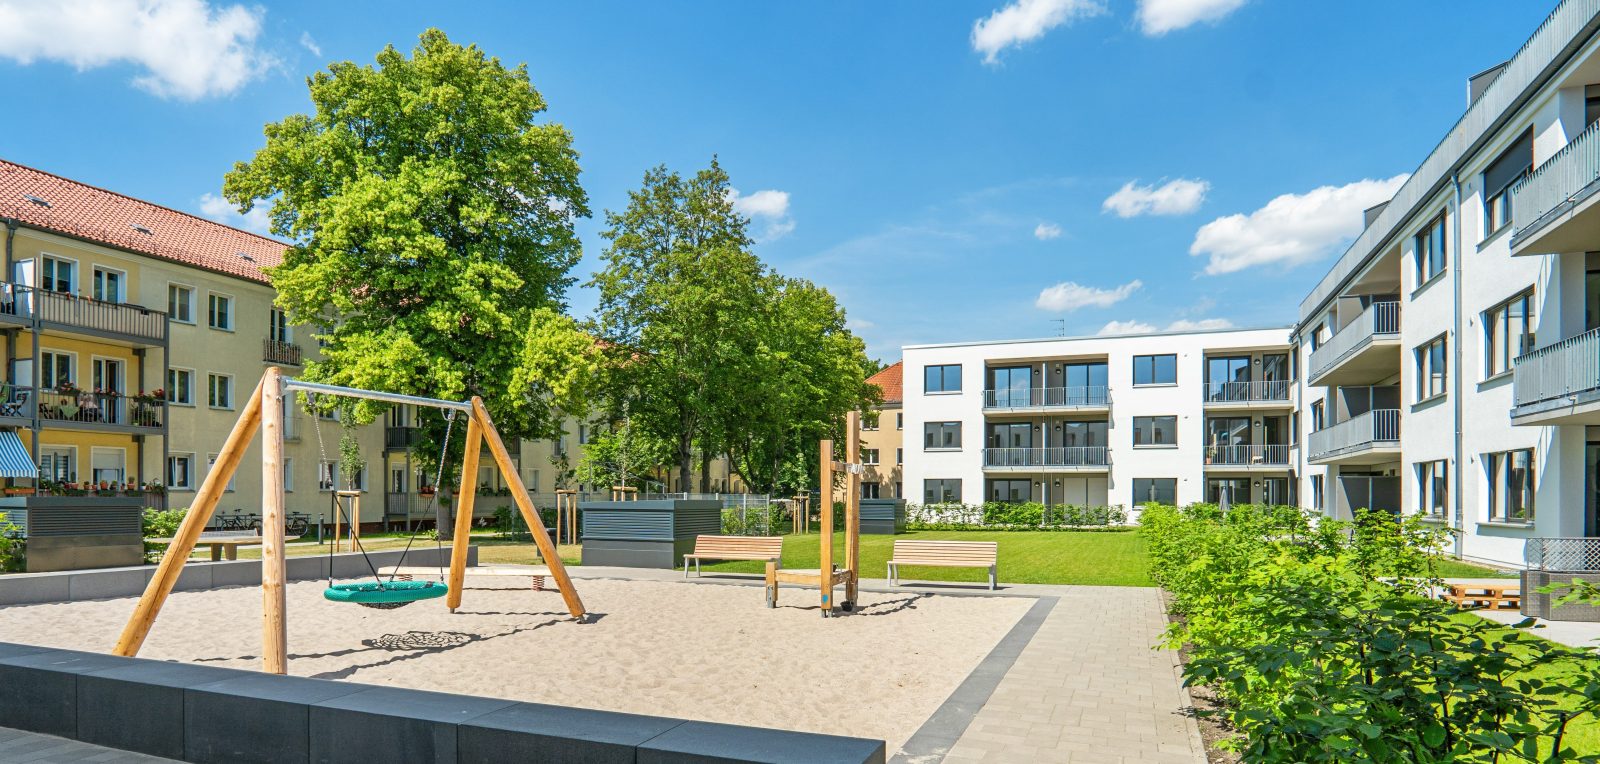 Erste Wohnungsneubau-Zertifizierung nach dem HQE-Nachhaltigkeitssiegel in Deutschland